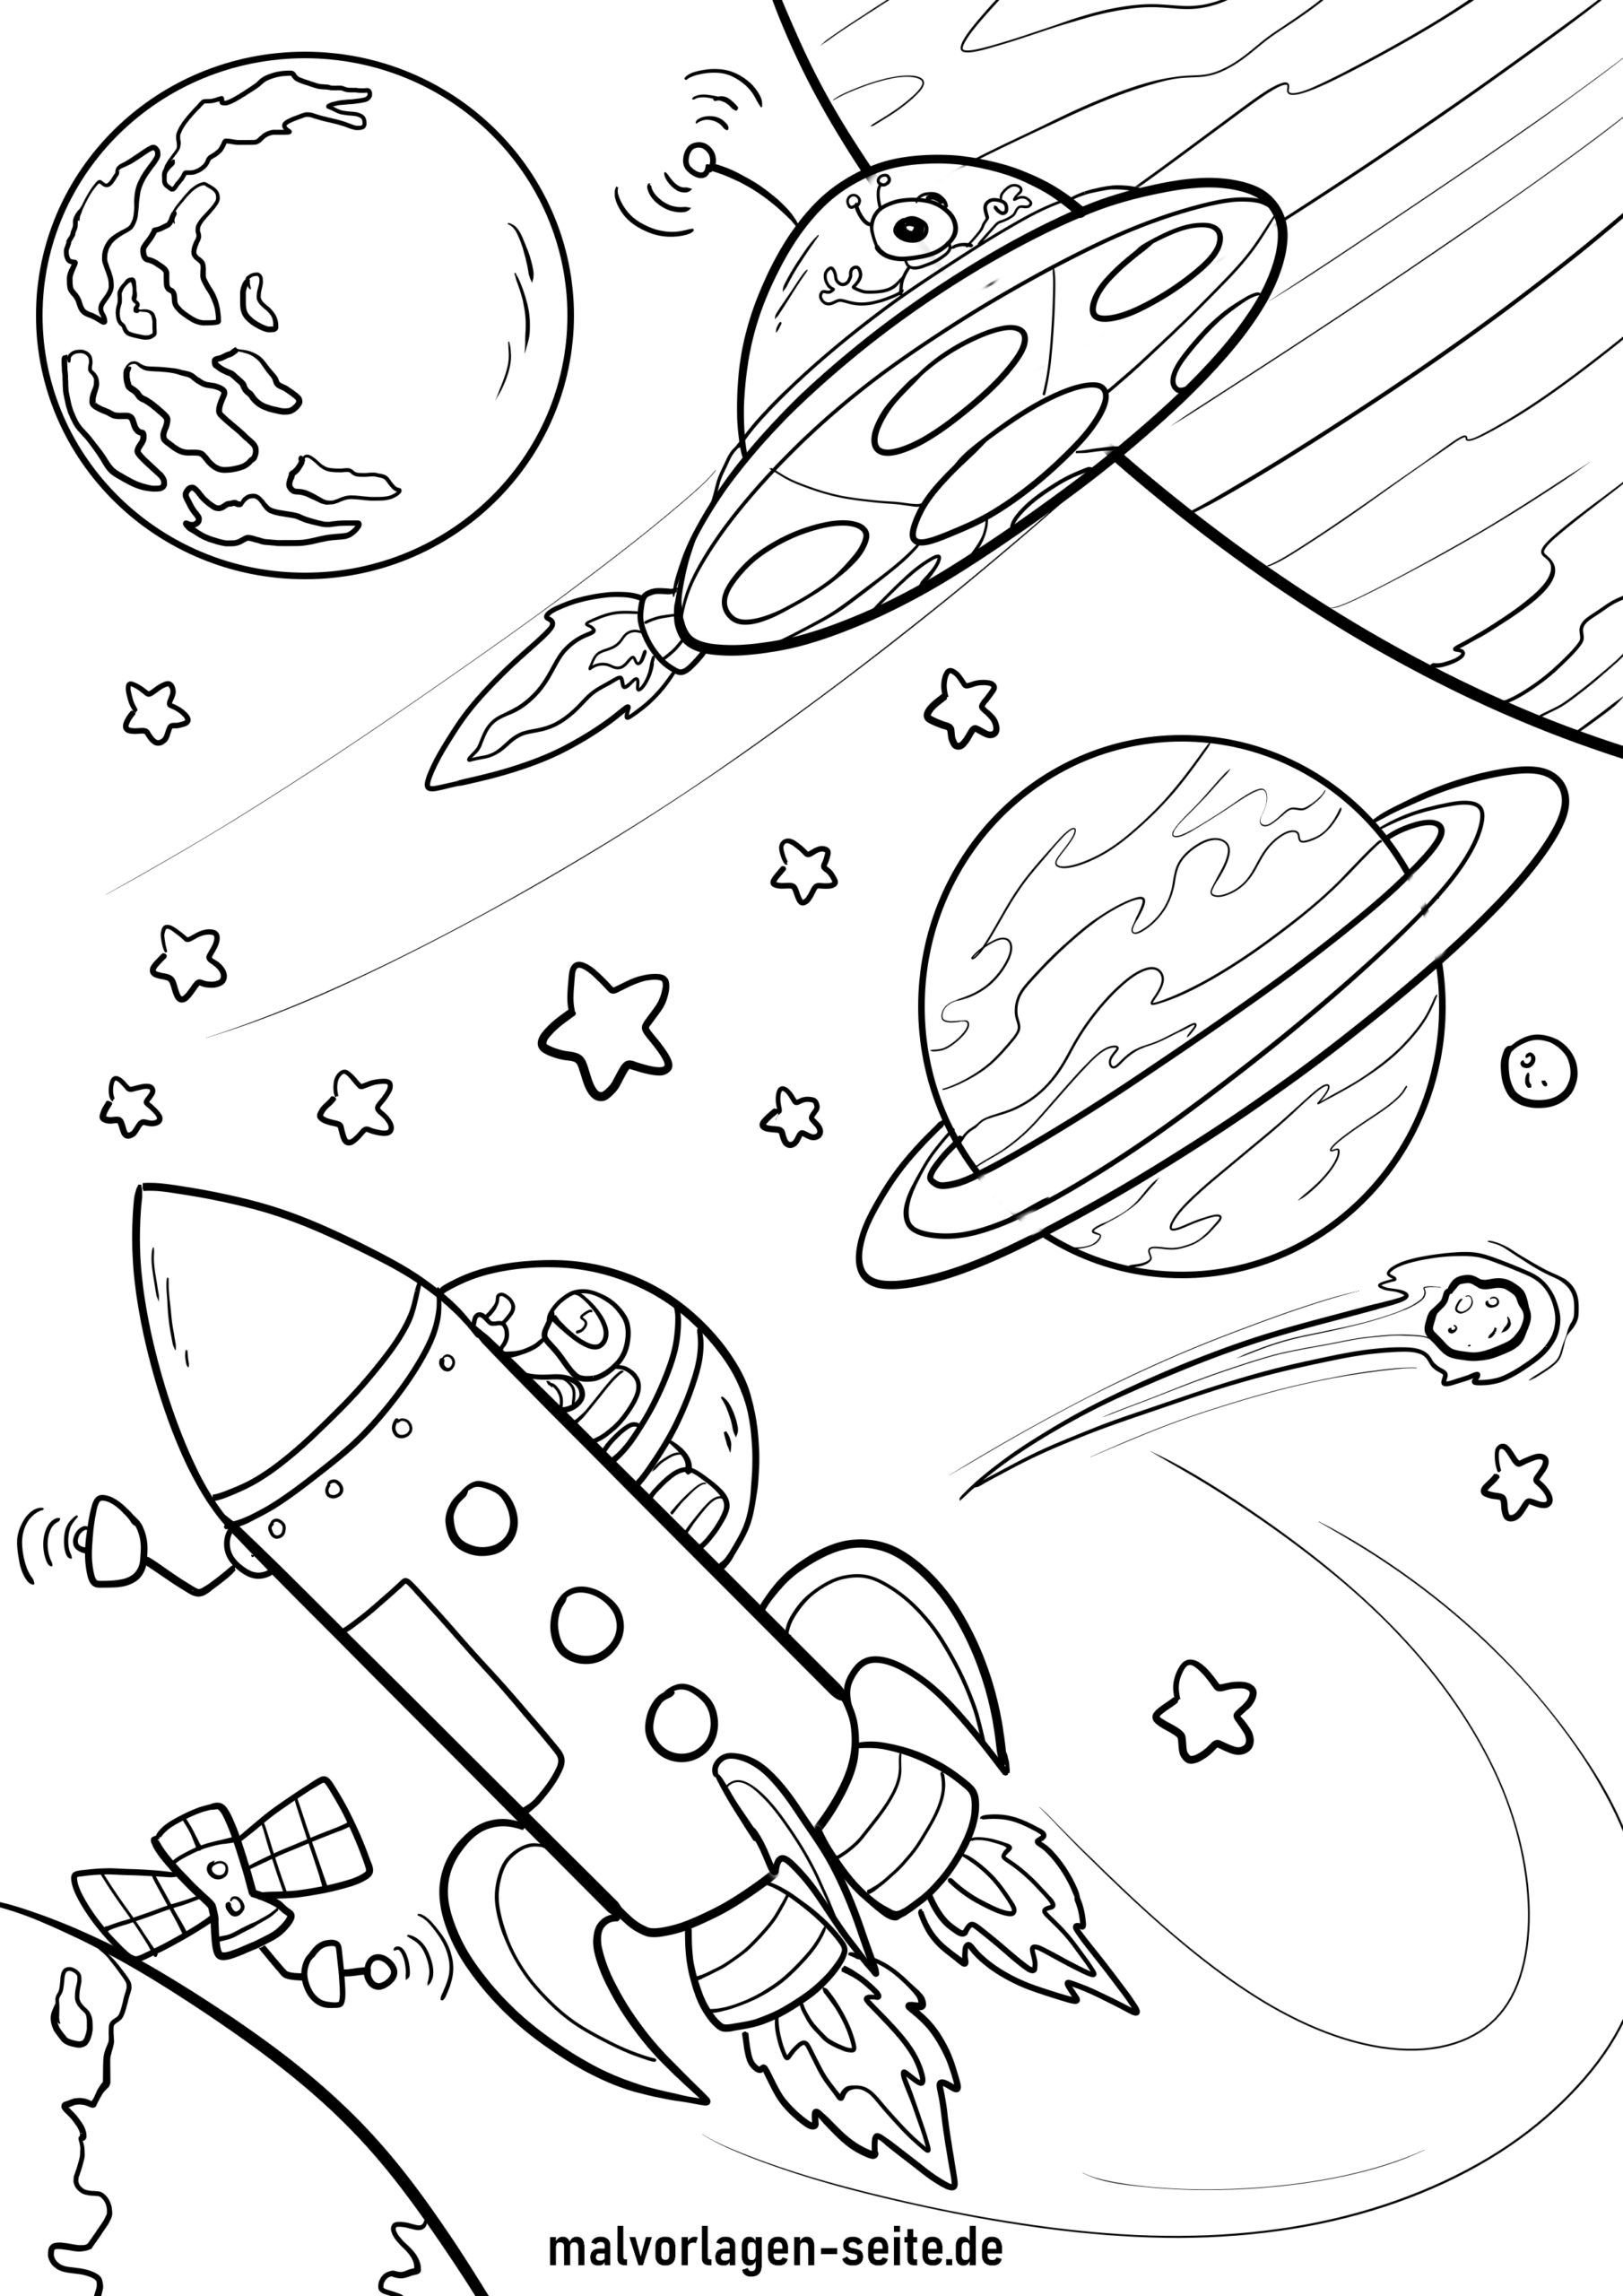 Раскраска космос и планеты. Космос раскраска для детей. Раскраска. В космосе. Космос для раскрашивания для детей. Космонавтика раскраски для детей.